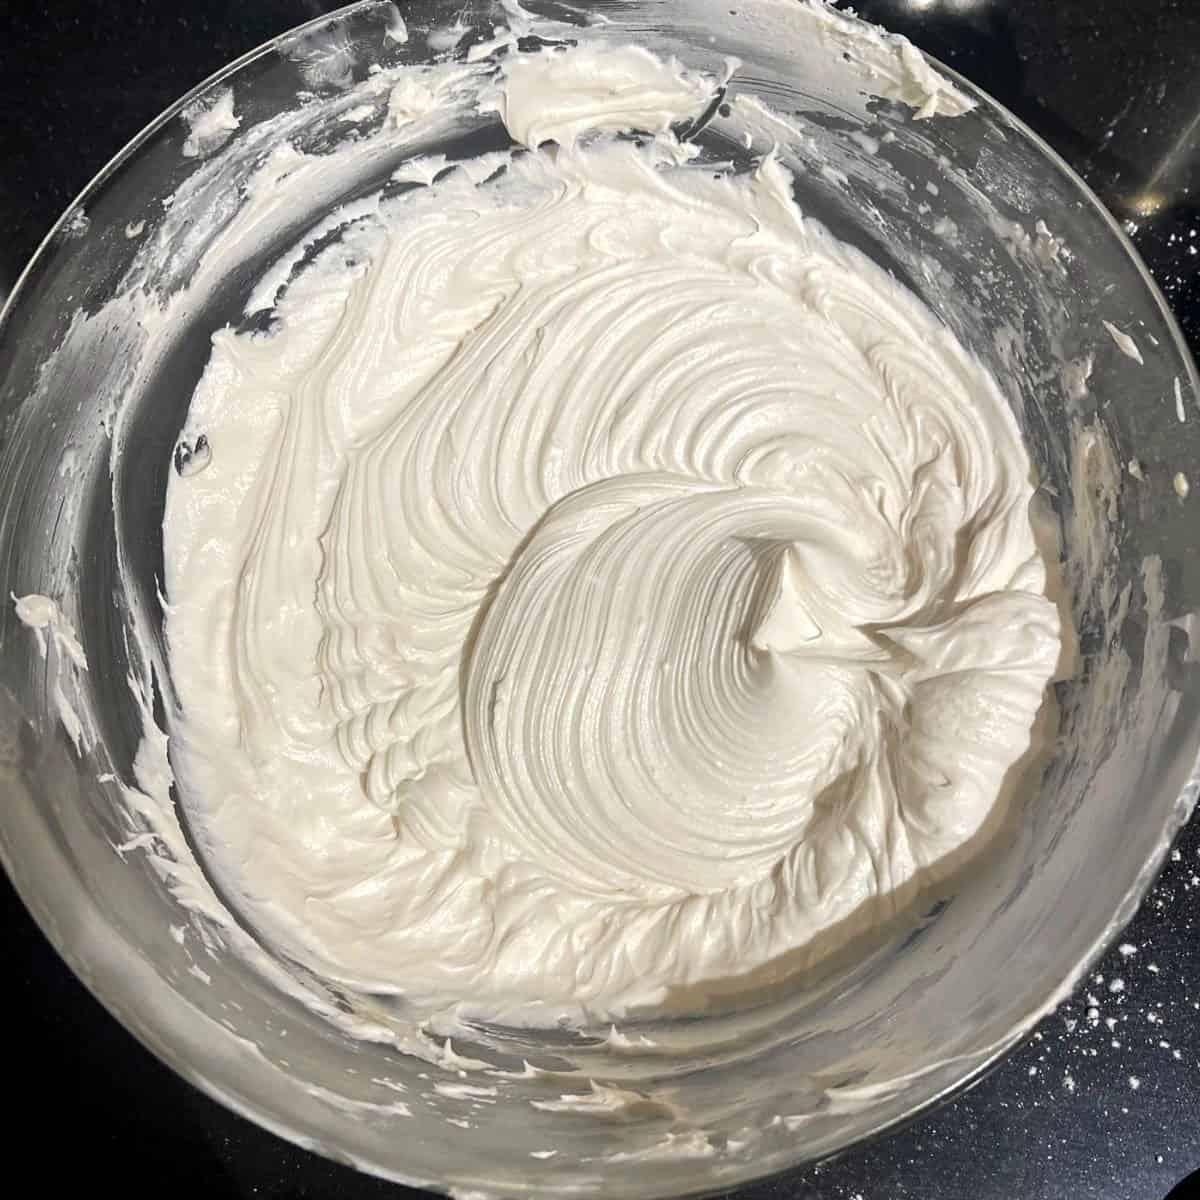 Sista vegansk vaniljsmörkrämfrosting i skål.